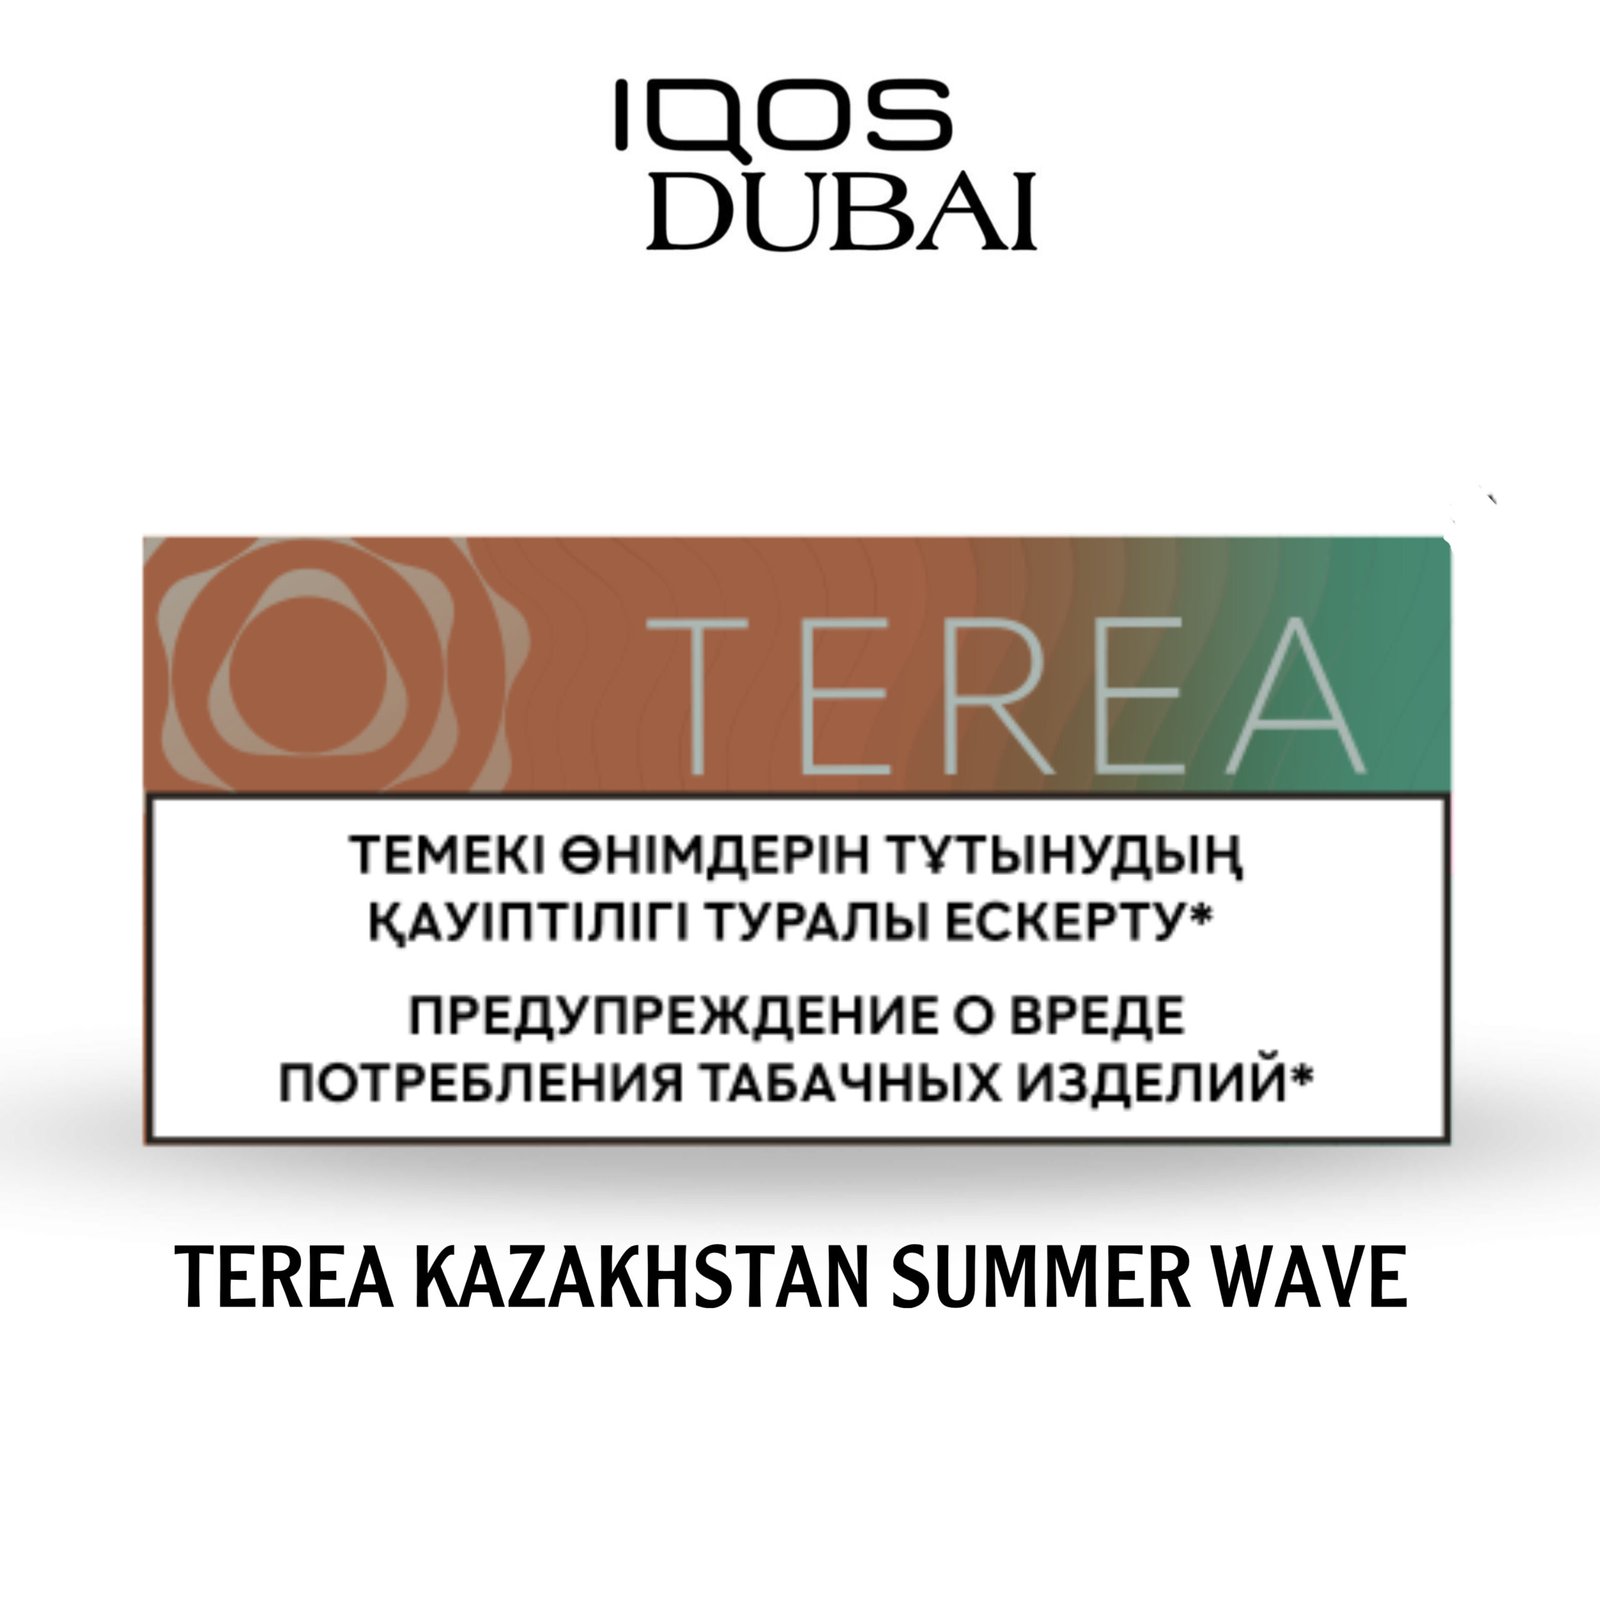 IQOS TEREA SUMMER WAVE KAZAKHSTAN | BEST IN DUBAI UAE